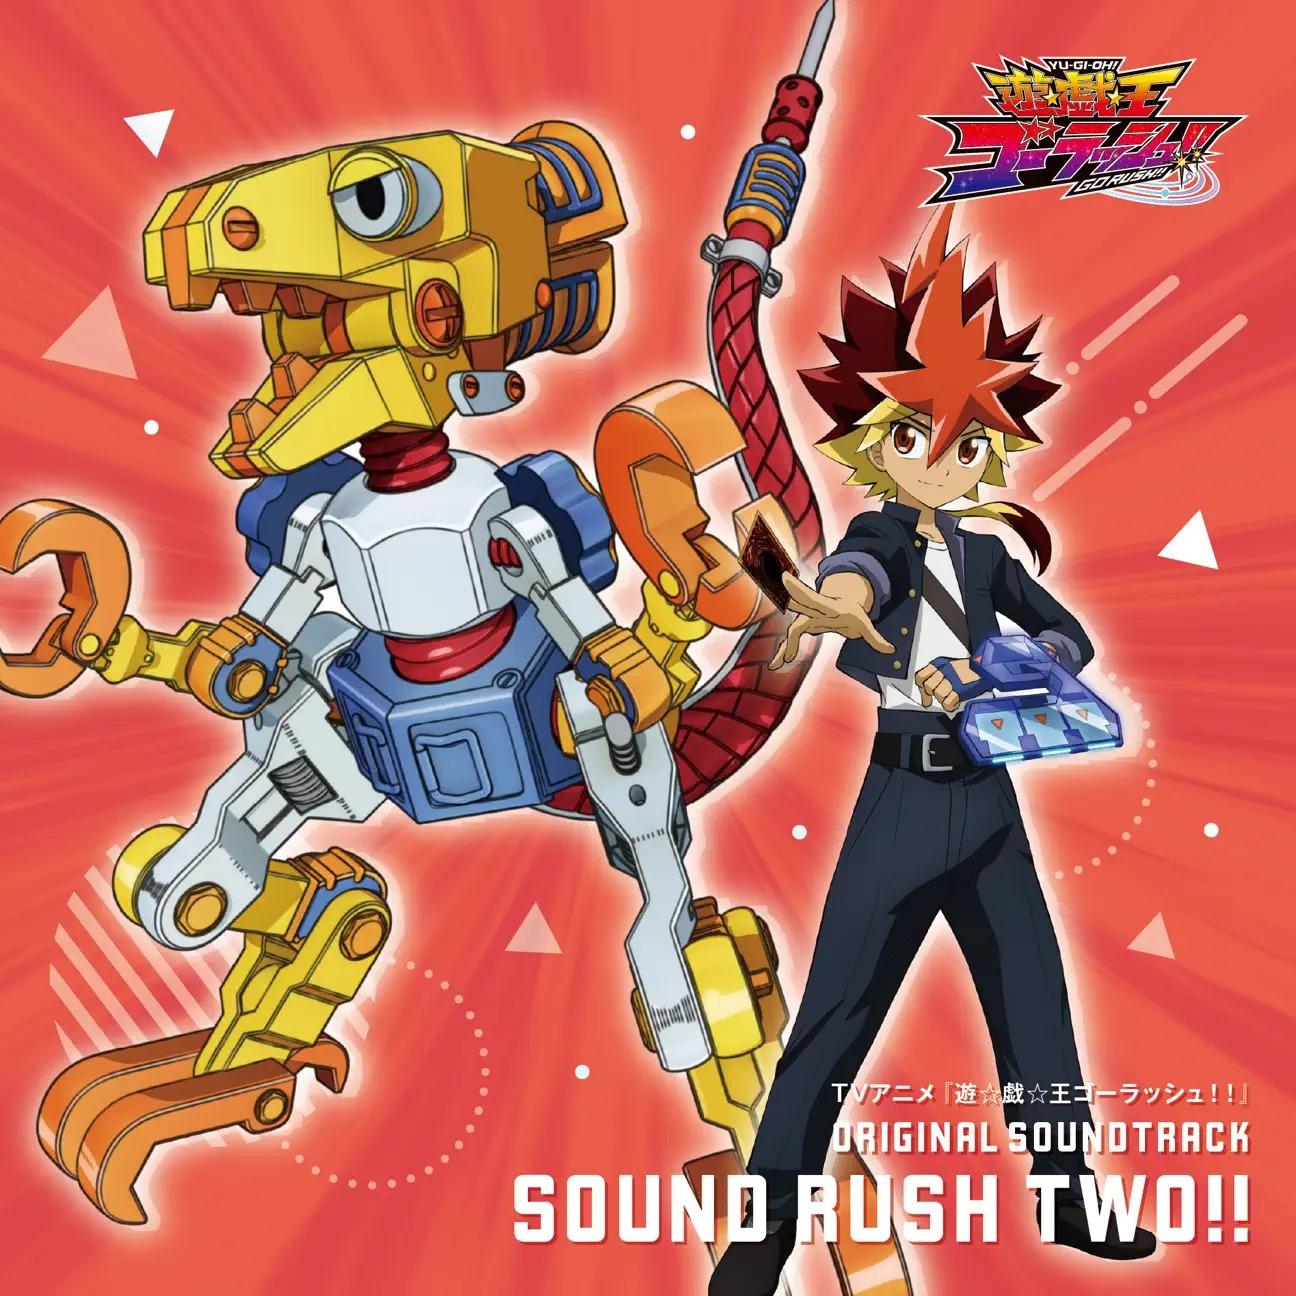 YU-GI-OH! GO RUSH!! Original Soundtrack: Sound Rush Two!!